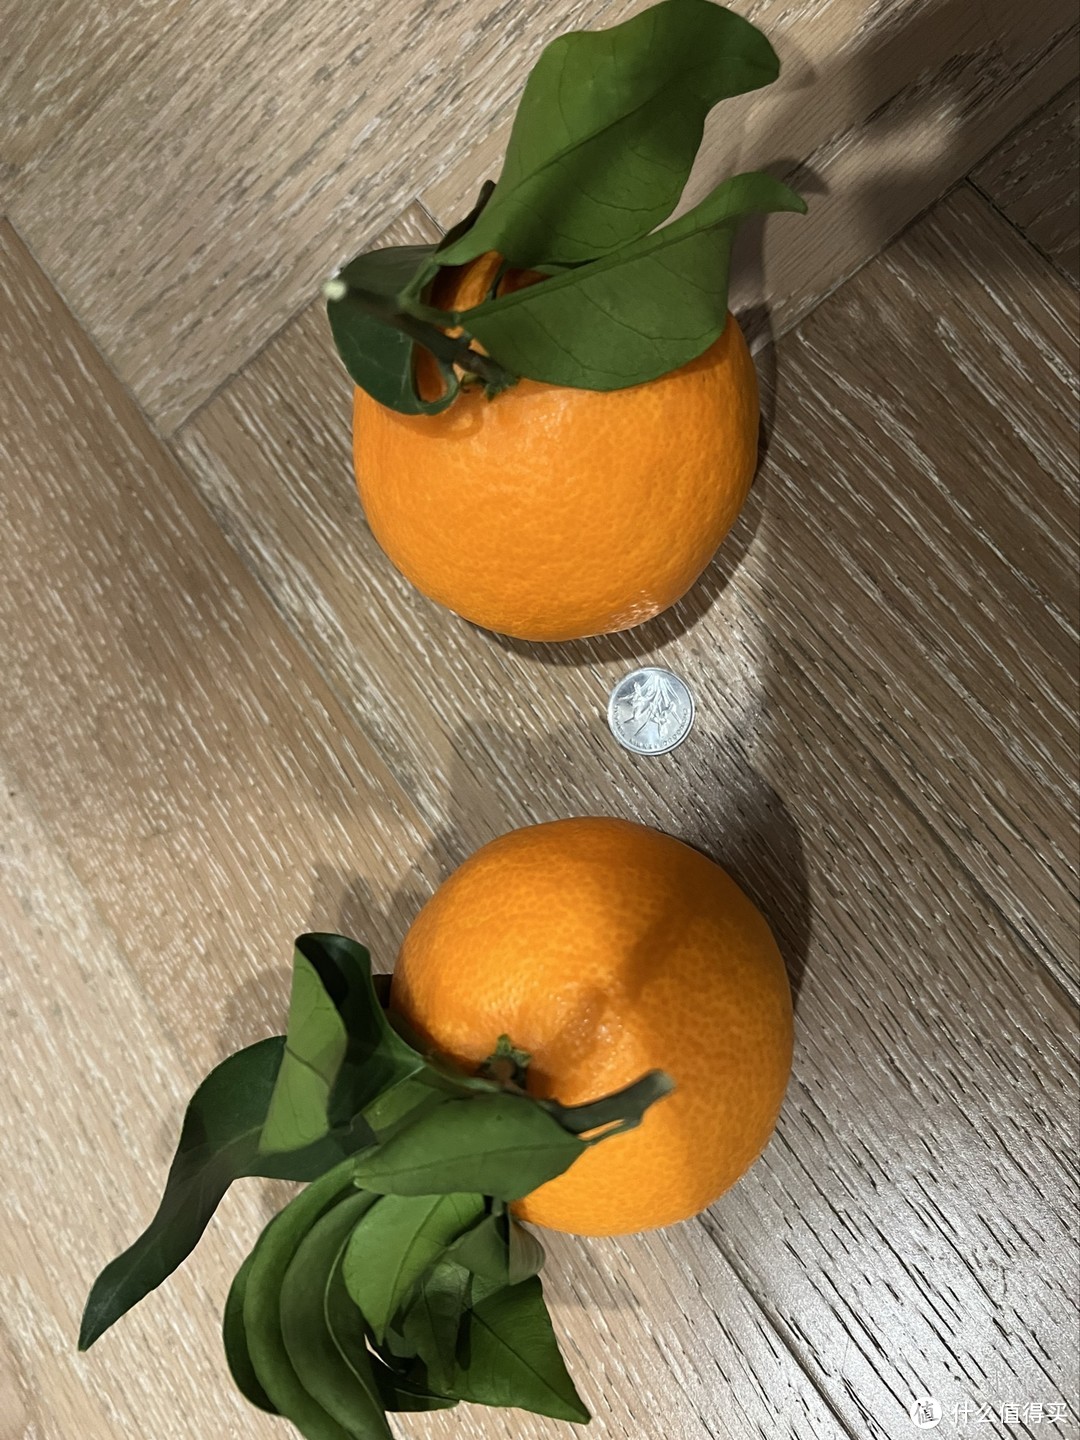 这次的爱媛橙很满意